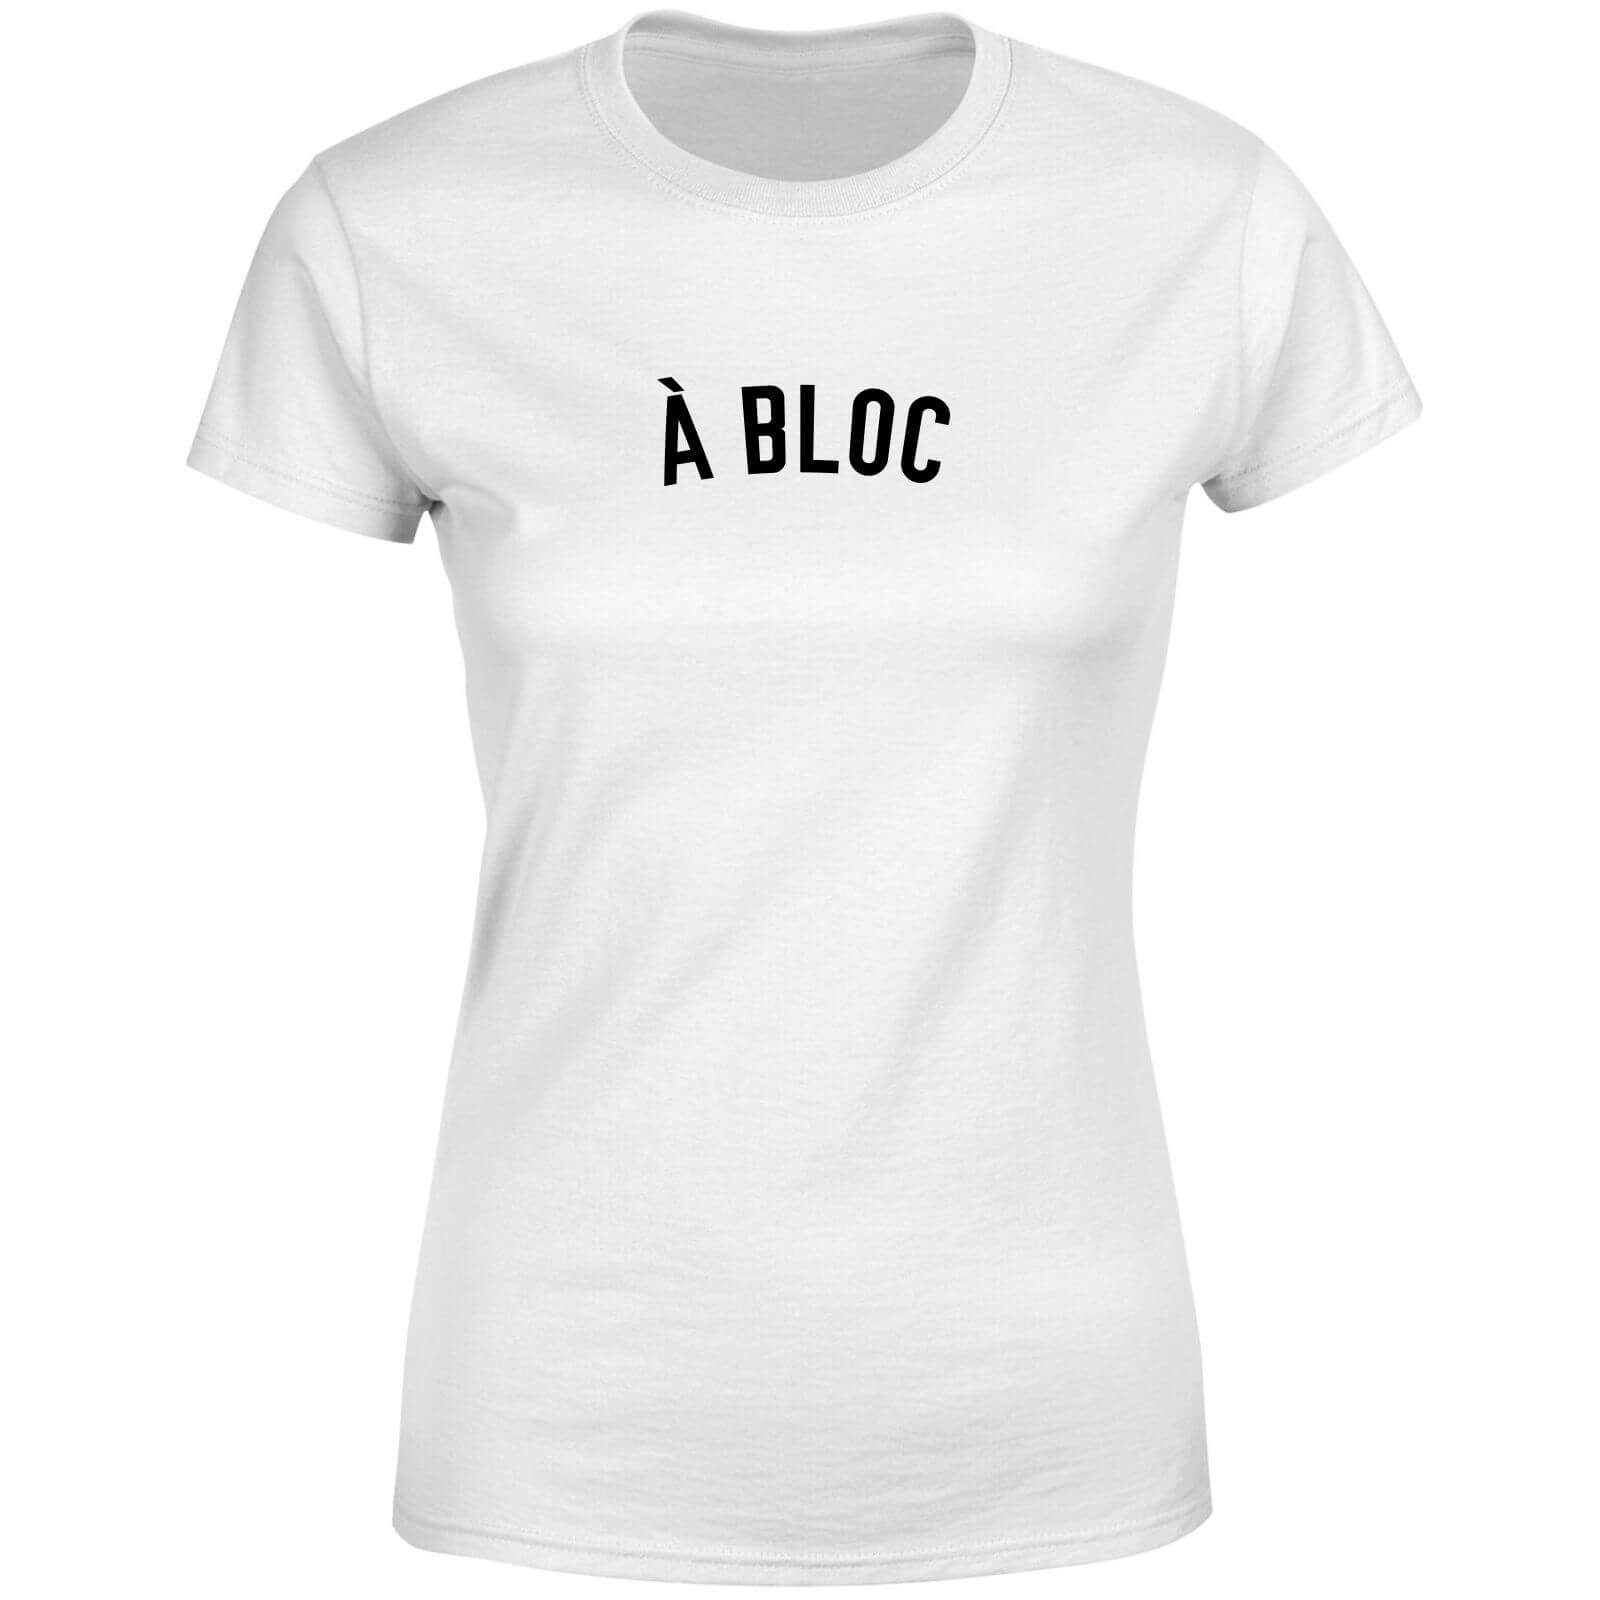 A Bloc Women's T-Shirt - White - L - White